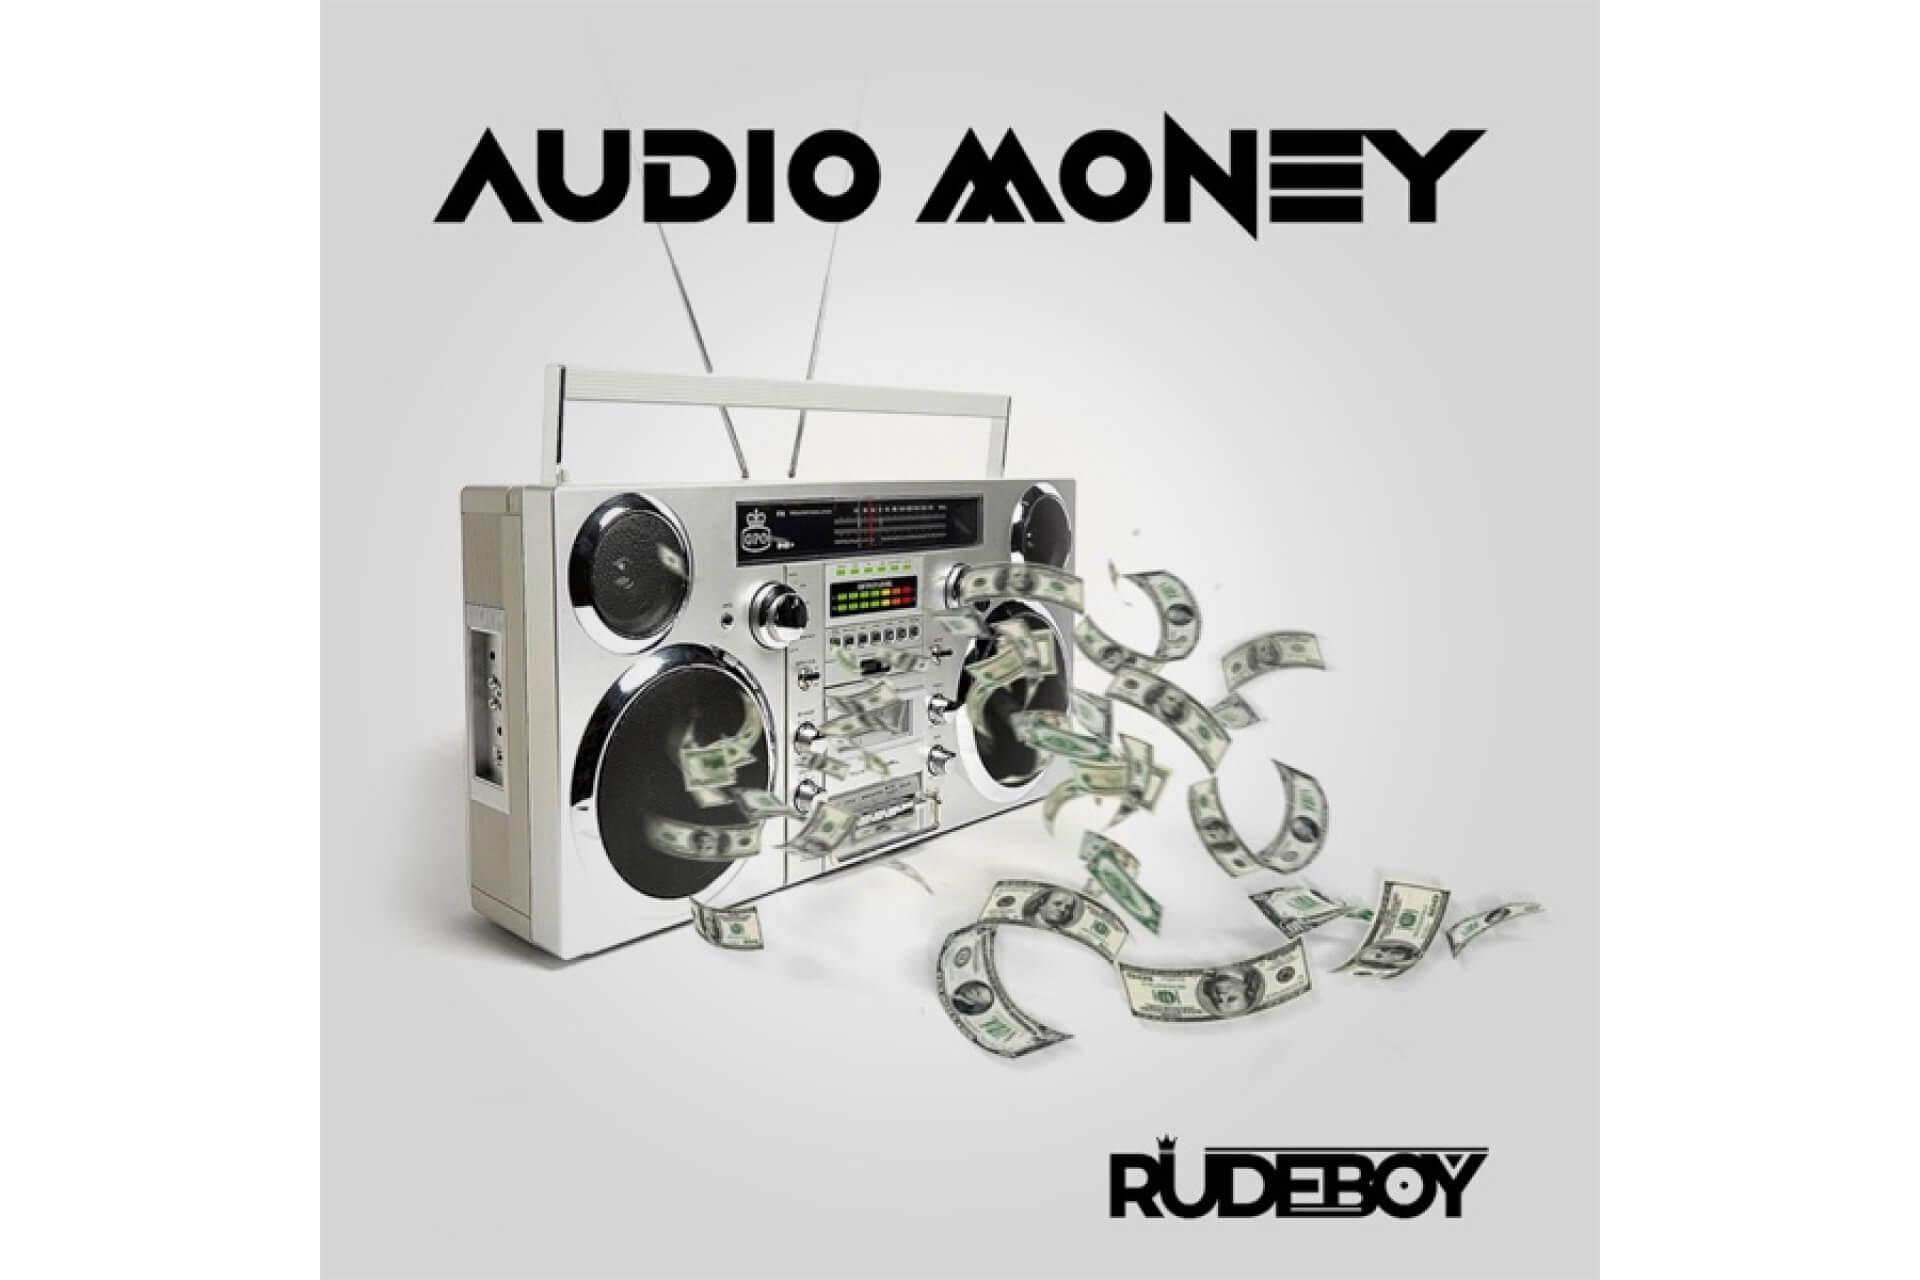 RudeBoy - Audio Money